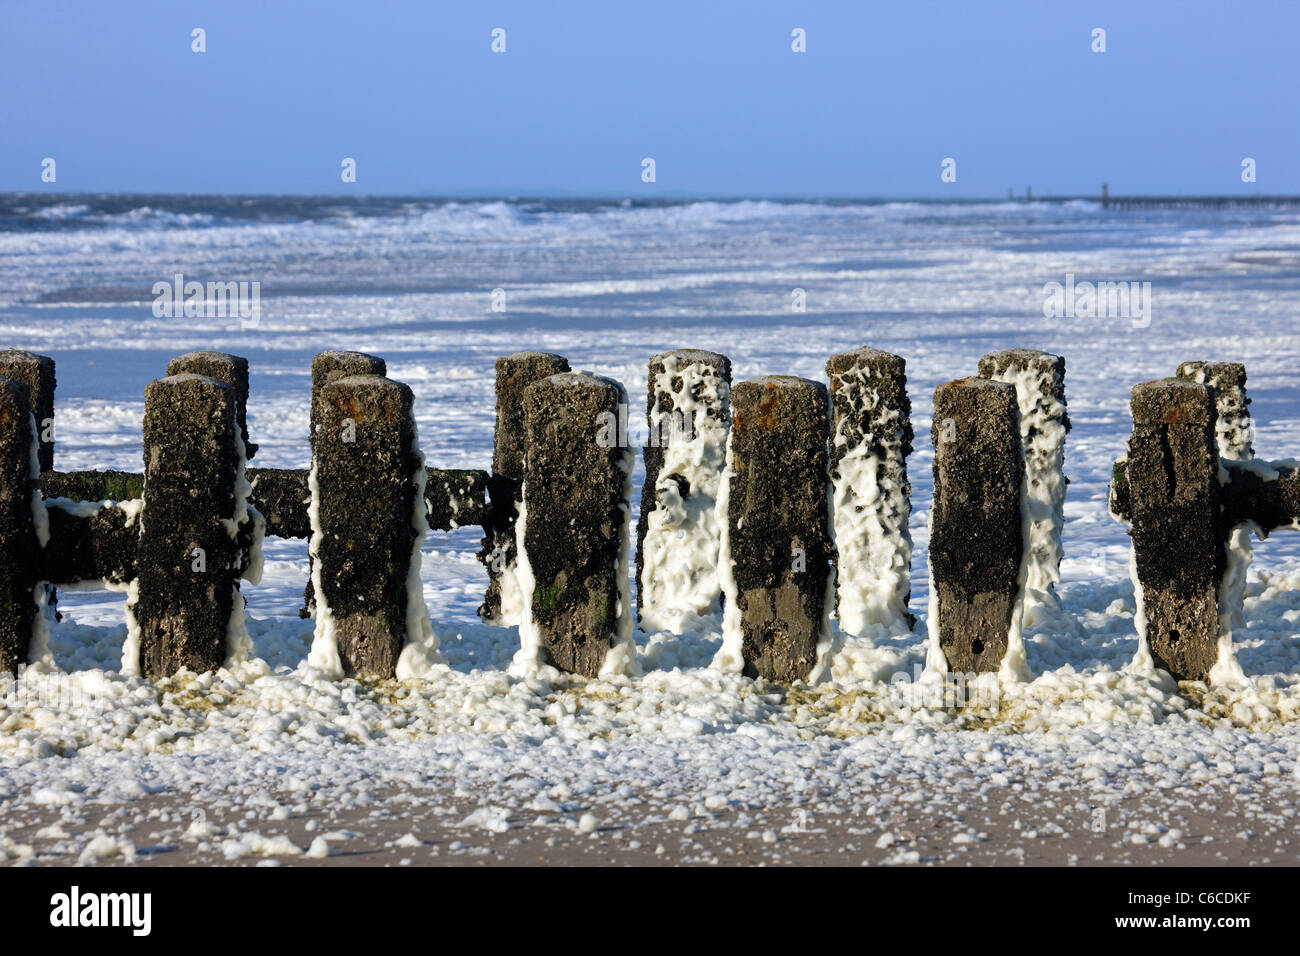 Espigón de madera cubierto de espuma de mar / océano / playa espuma espuma formada durante condiciones de tormenta y tras una floración de algas Foto de stock